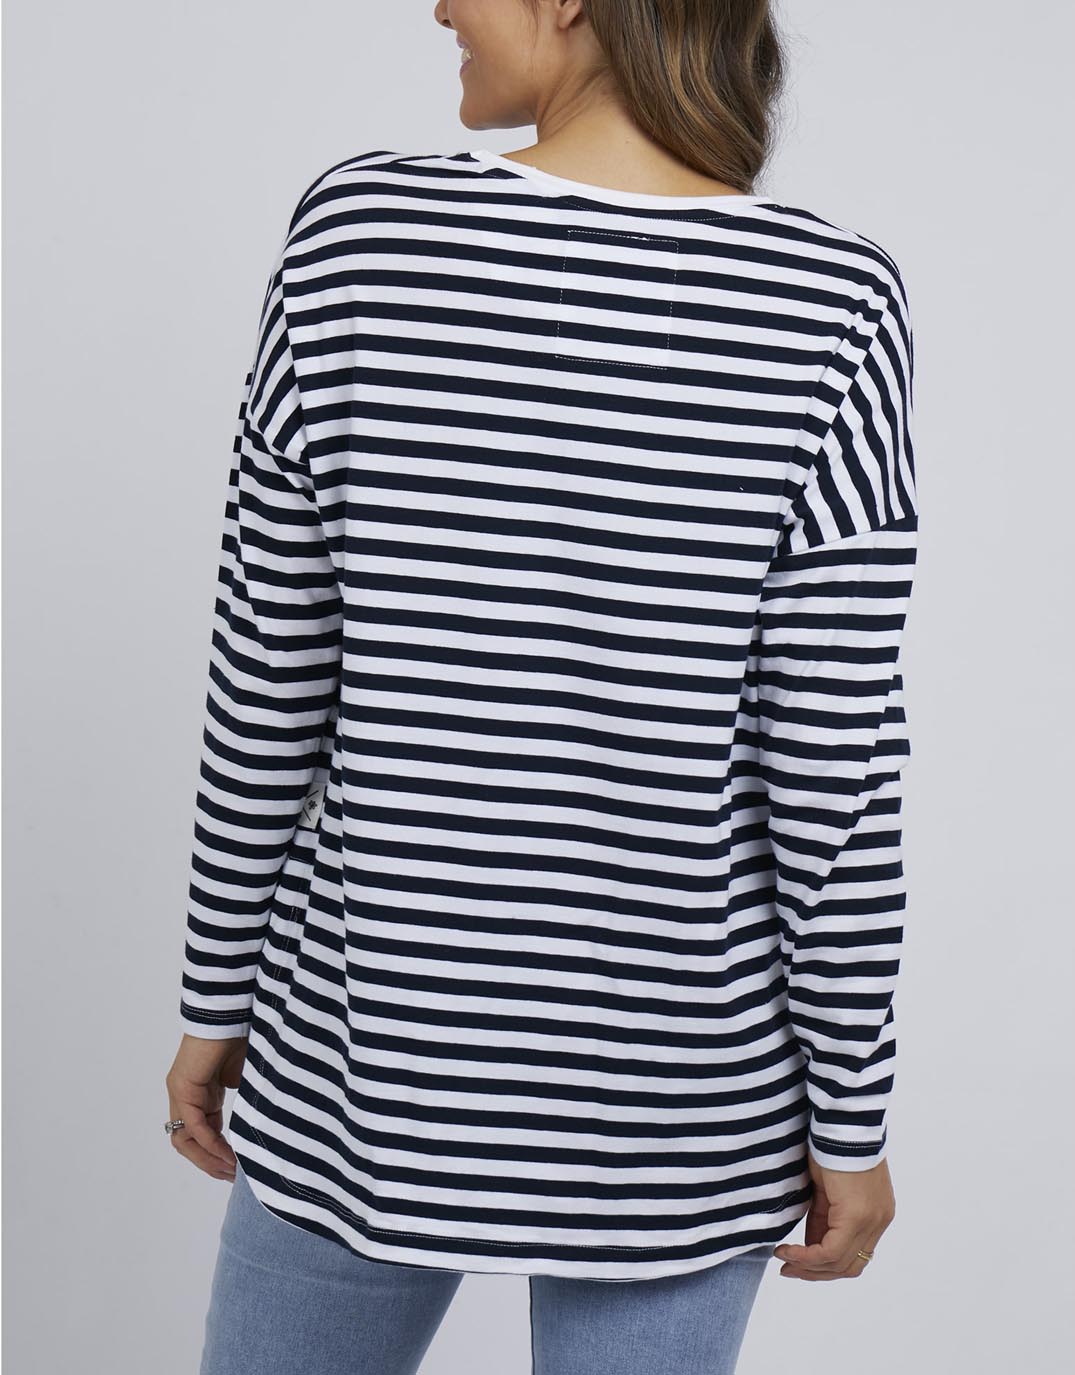 elm-lauren-long-sleeve-stripe-tee-navy-white-stripe-womens-clothing